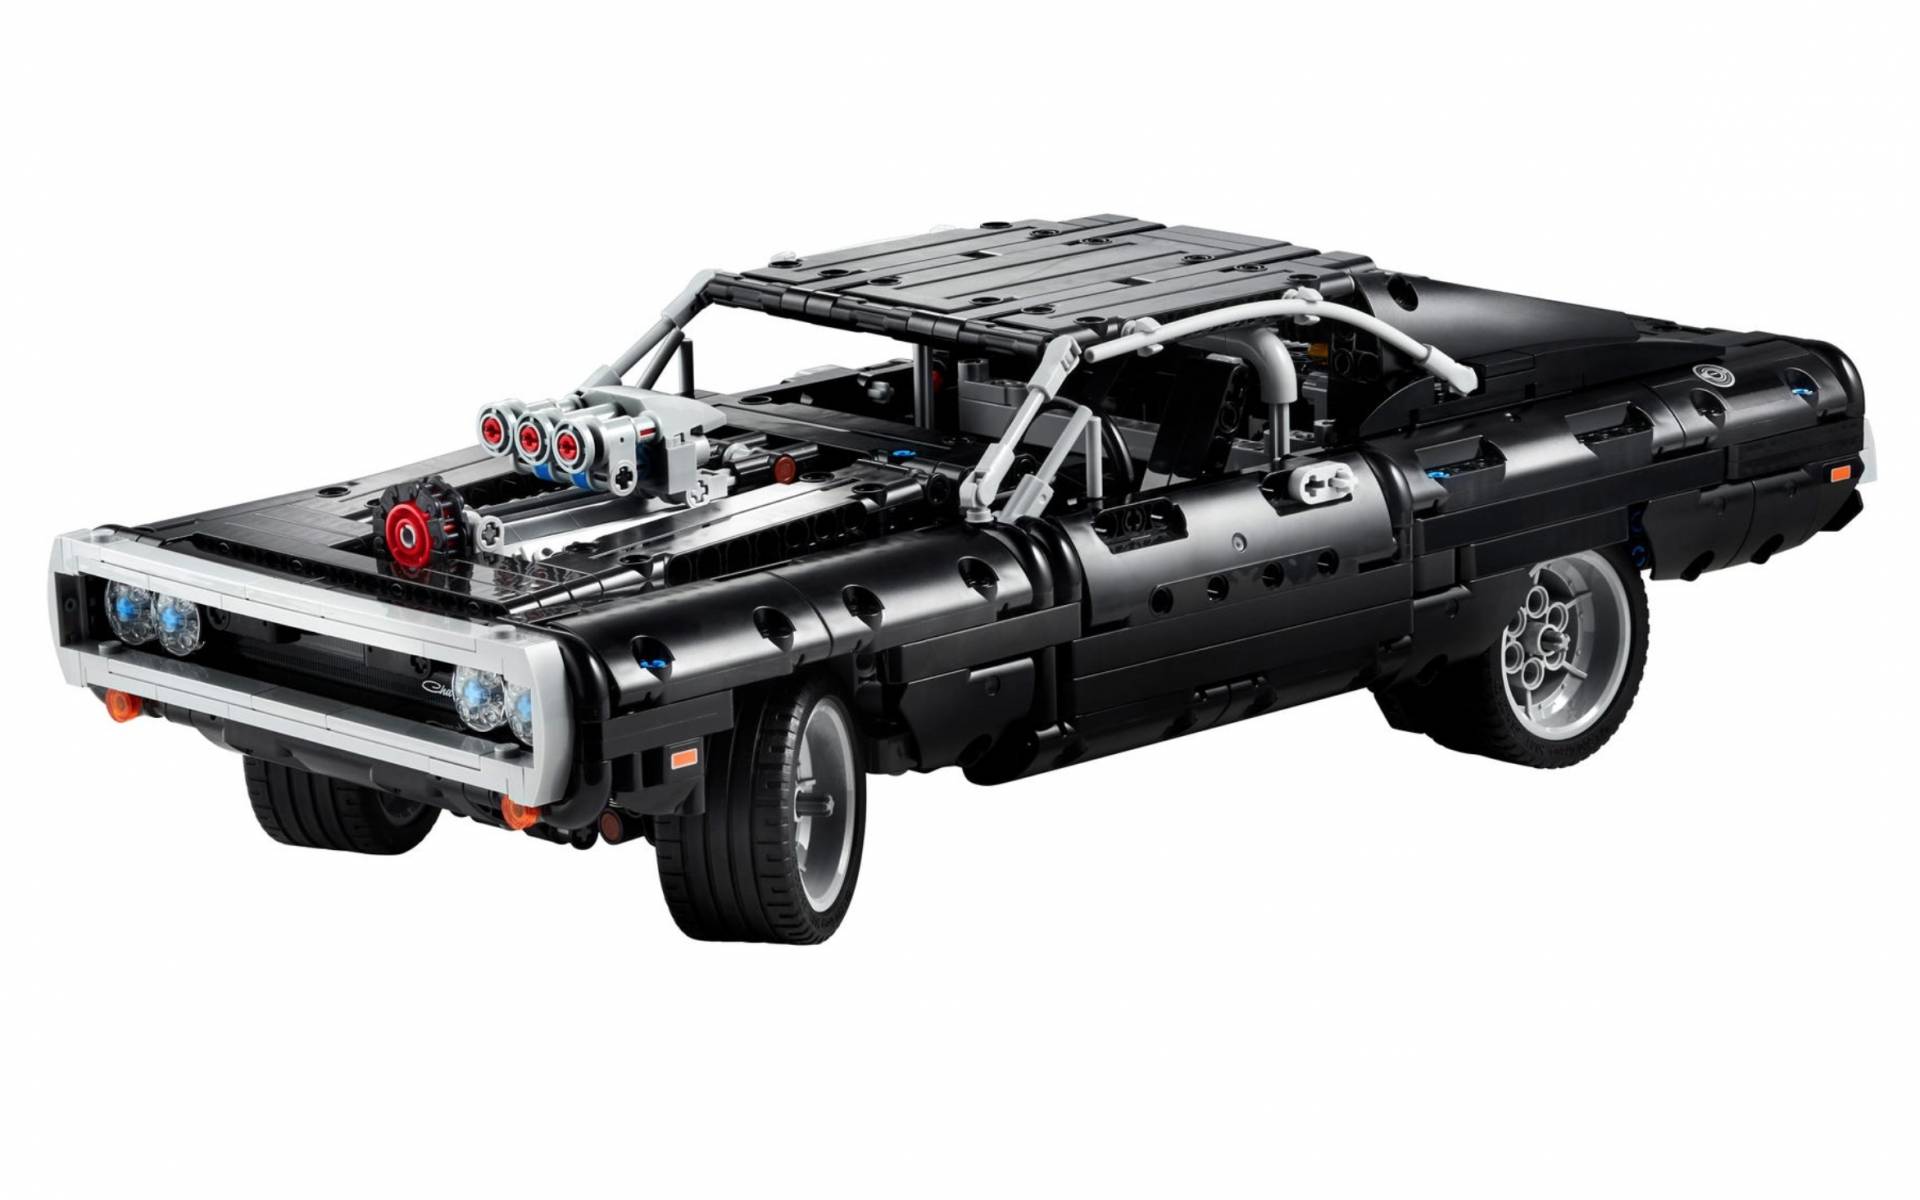 Cette nouvelle voiture Lego plaira aux mordus de Rapides et dangereux -  Guide Auto